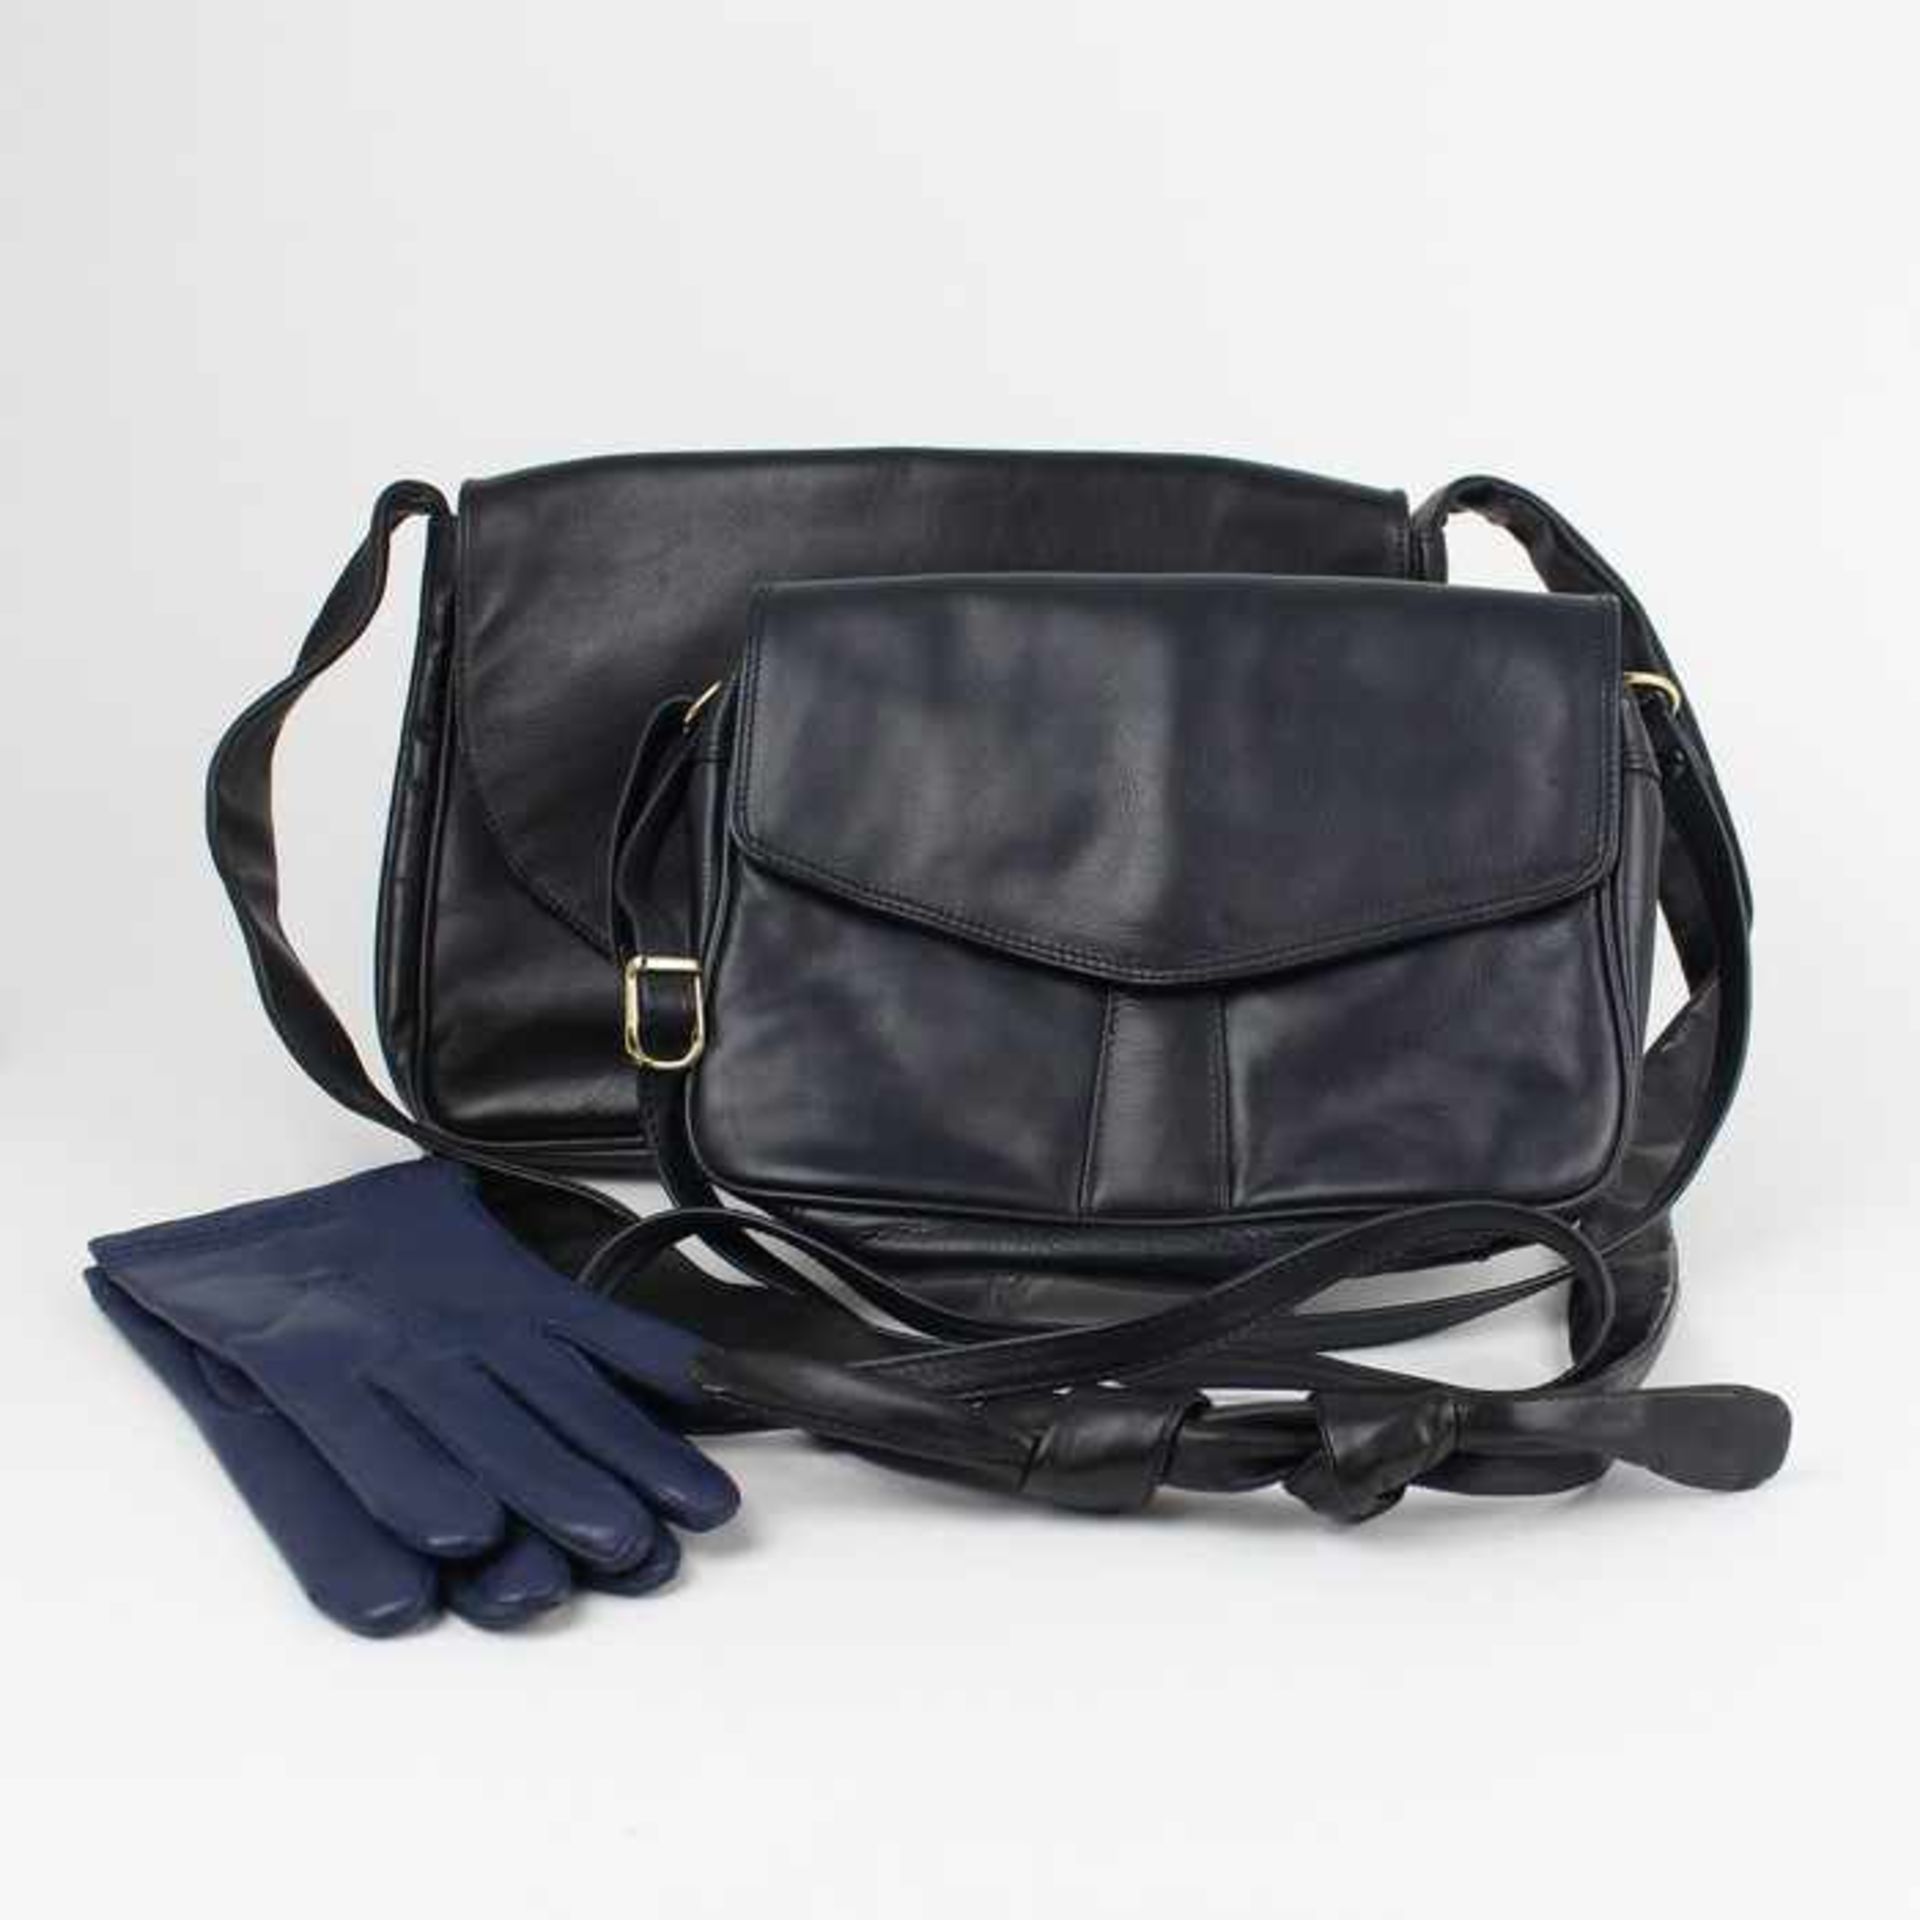 Damenaccessoires2 Handtaschen, schwarz, Schulterriemen, L 25 u. 33 cm, 1 Paar blaue Lederhandschuhe,